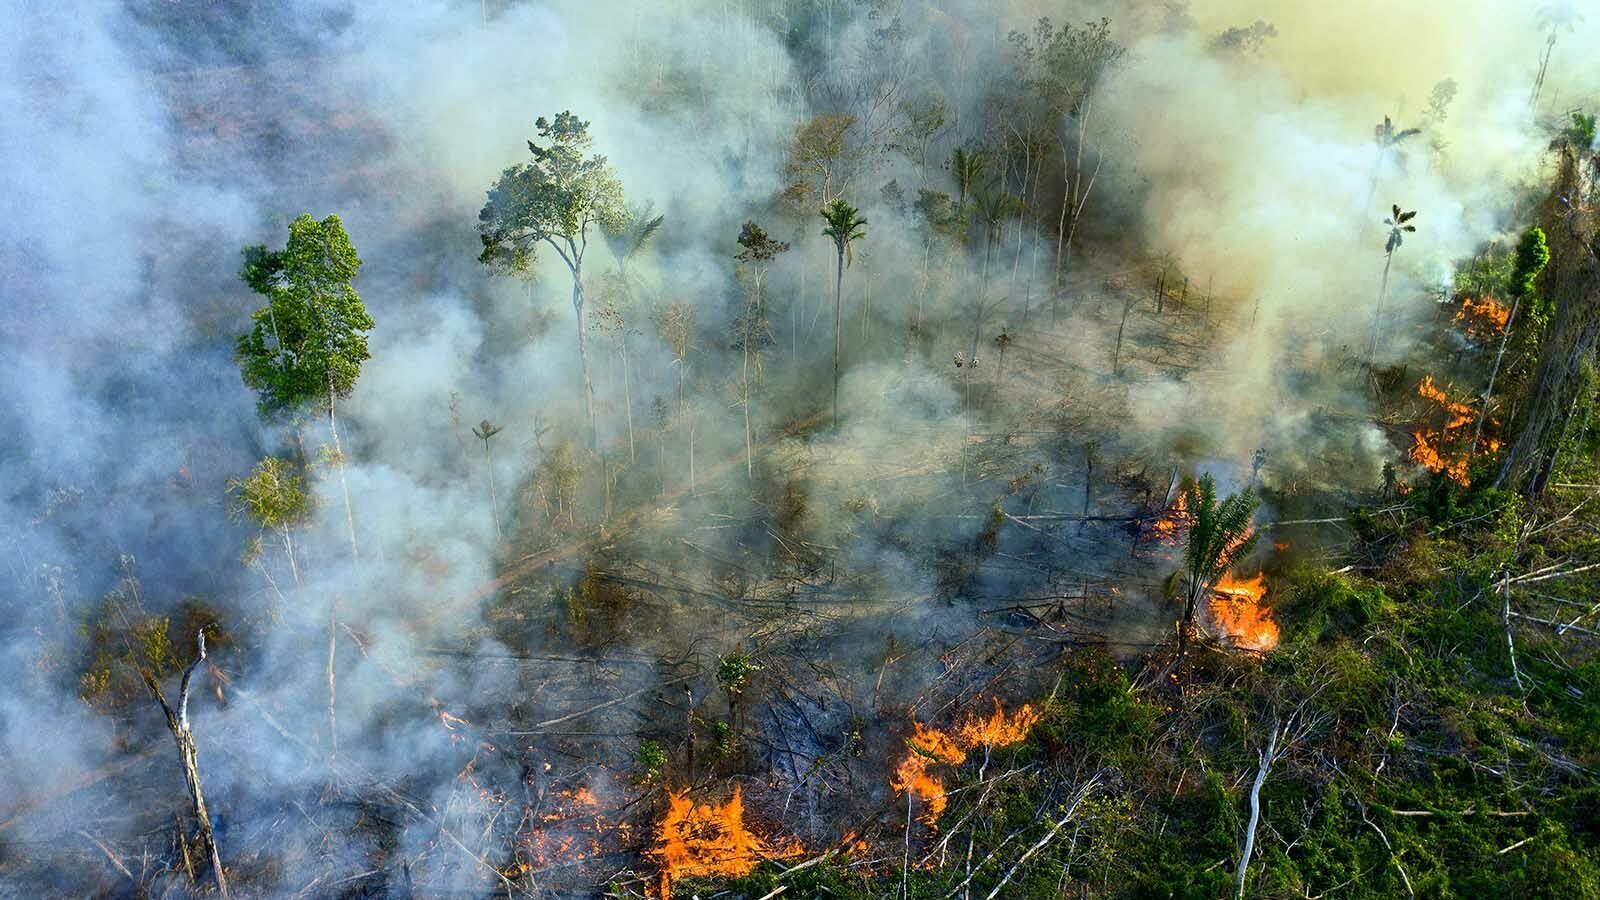 Стихийное бедствие в Амазонии: в лесных пожарах сгорают «легкие планеты»